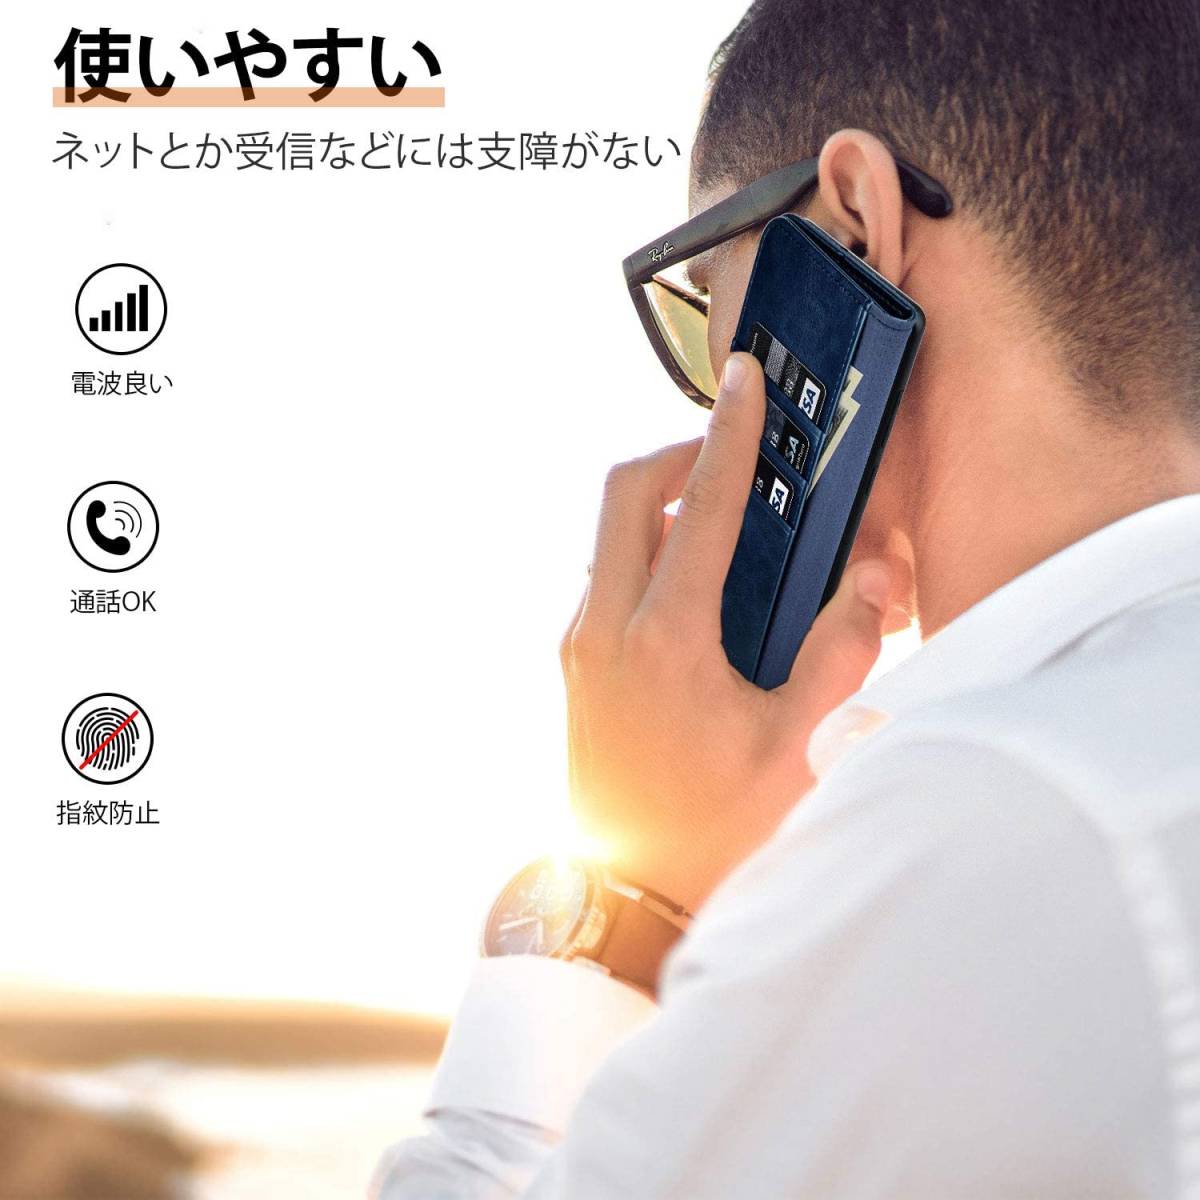 送料無料 Galaxy S20 Ultra 手帳ケース 手帳型ケース ネイビー カバー スタンド機能 カード収納 マグネット式 全面保護 耐衝撃